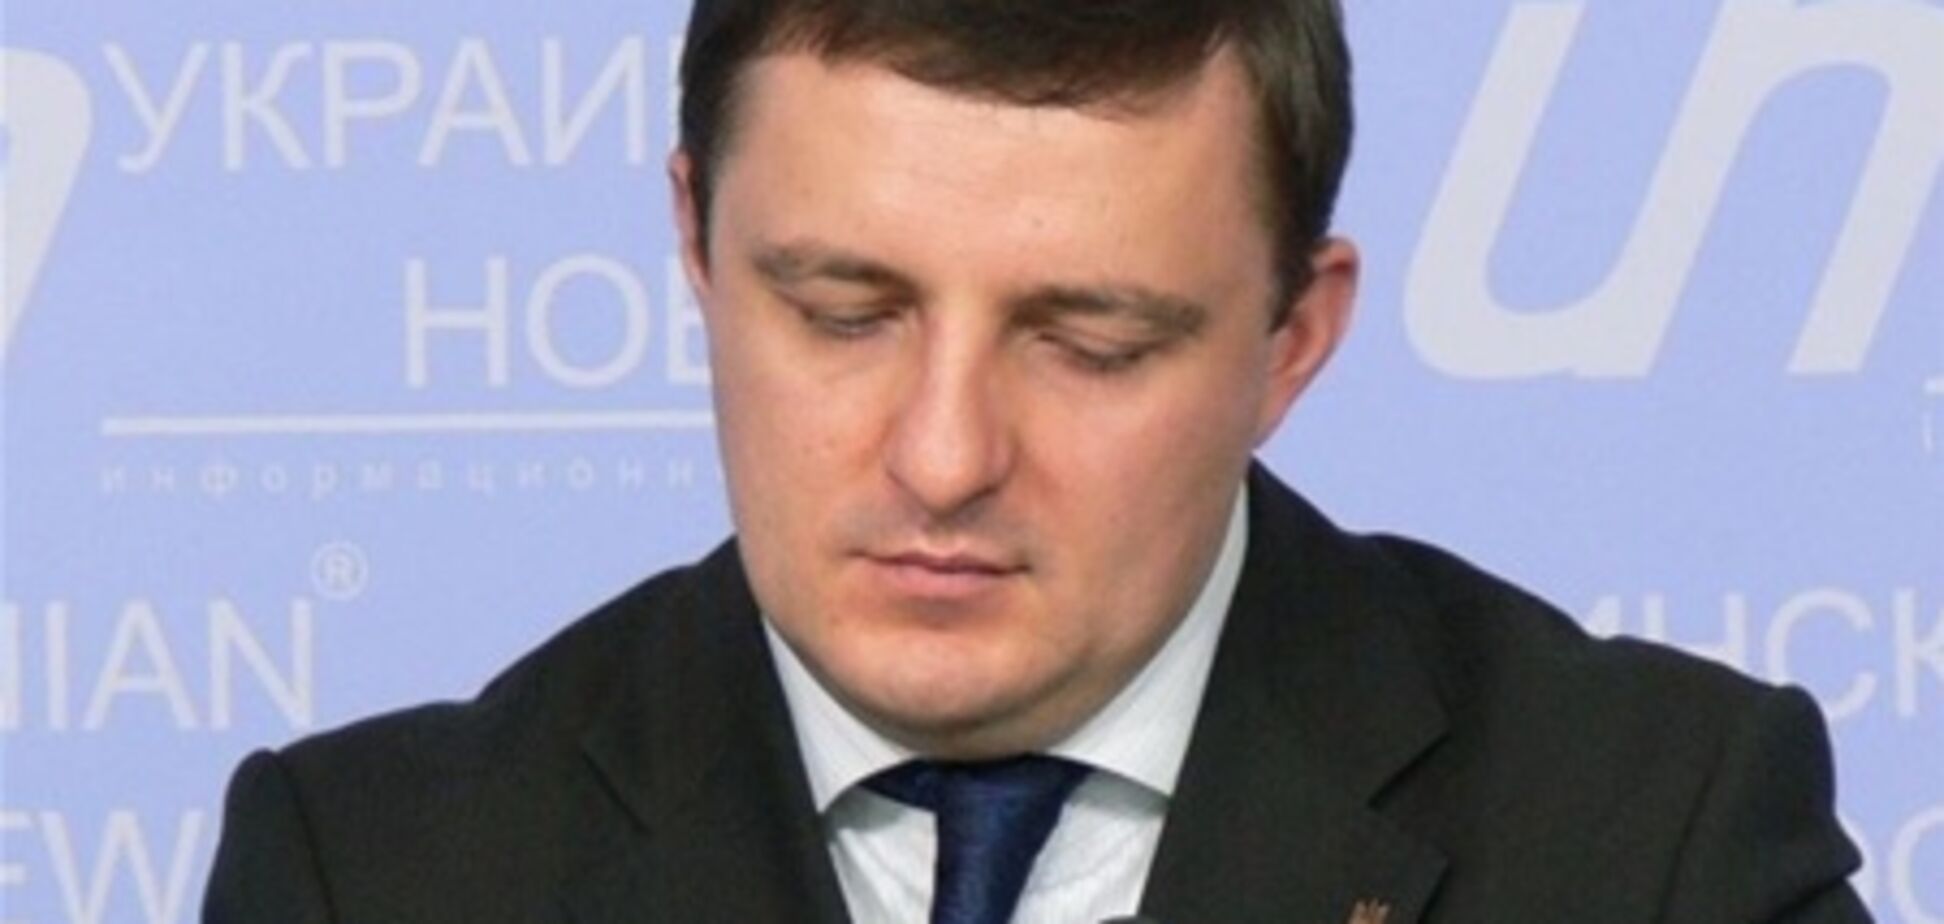 Купчак заявил, что Яценюк угрожал ему физической расправой